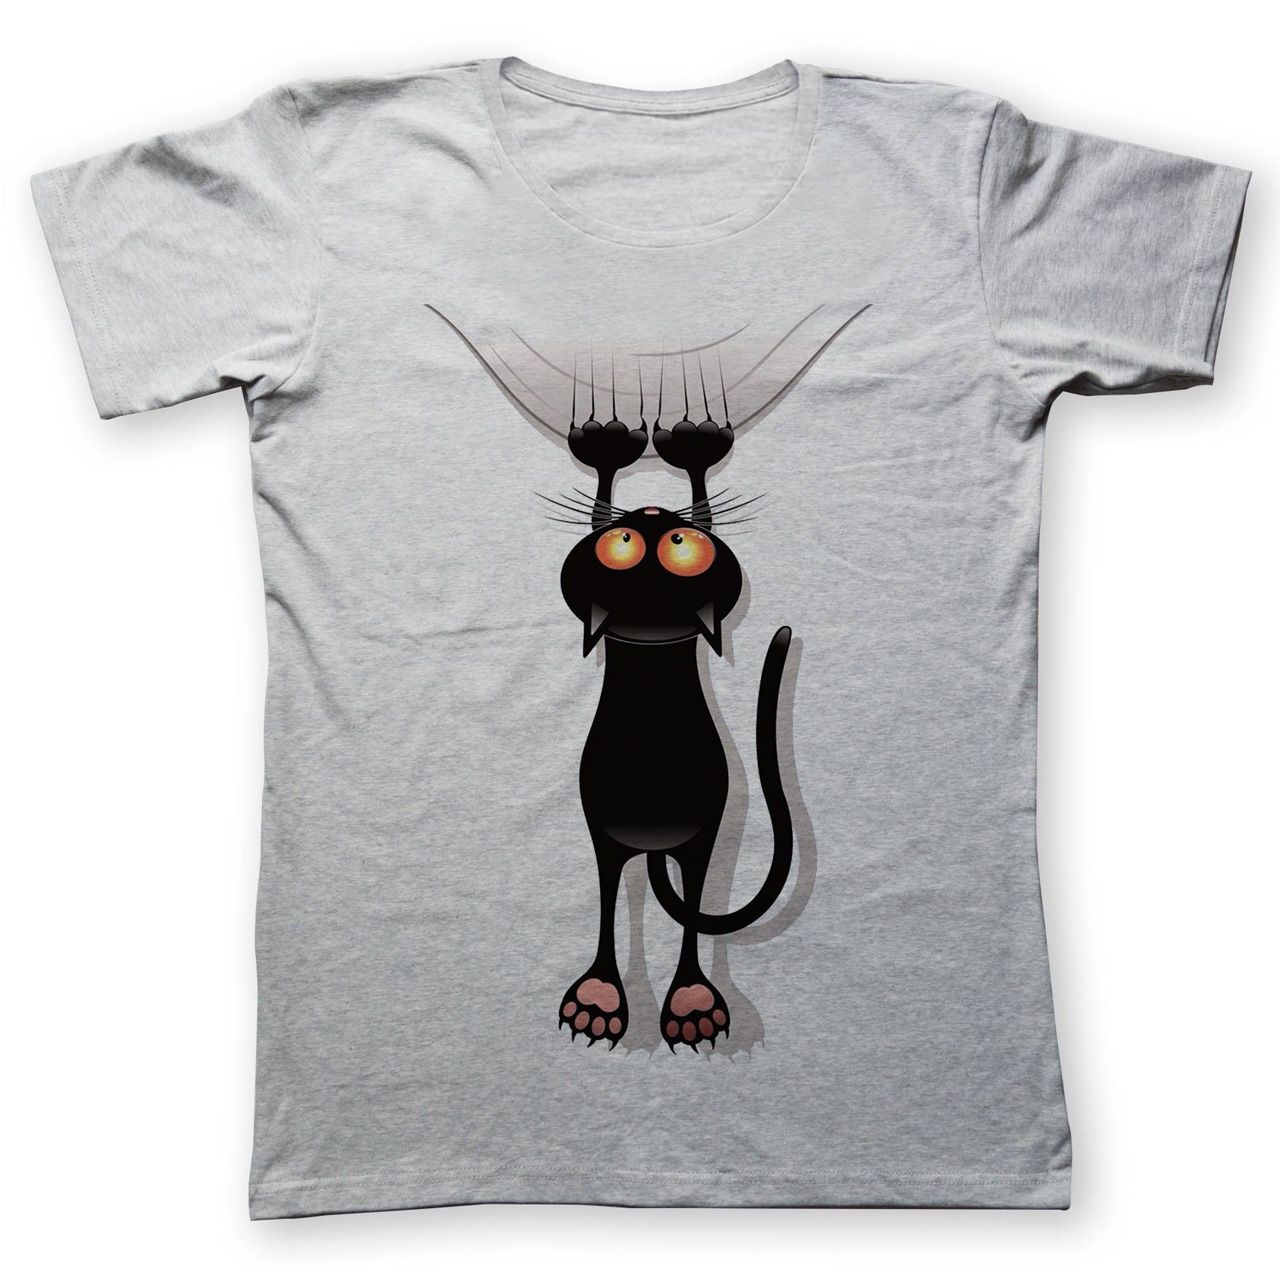 تی شرت به رسم طرح گربه کد 456 -  - 1